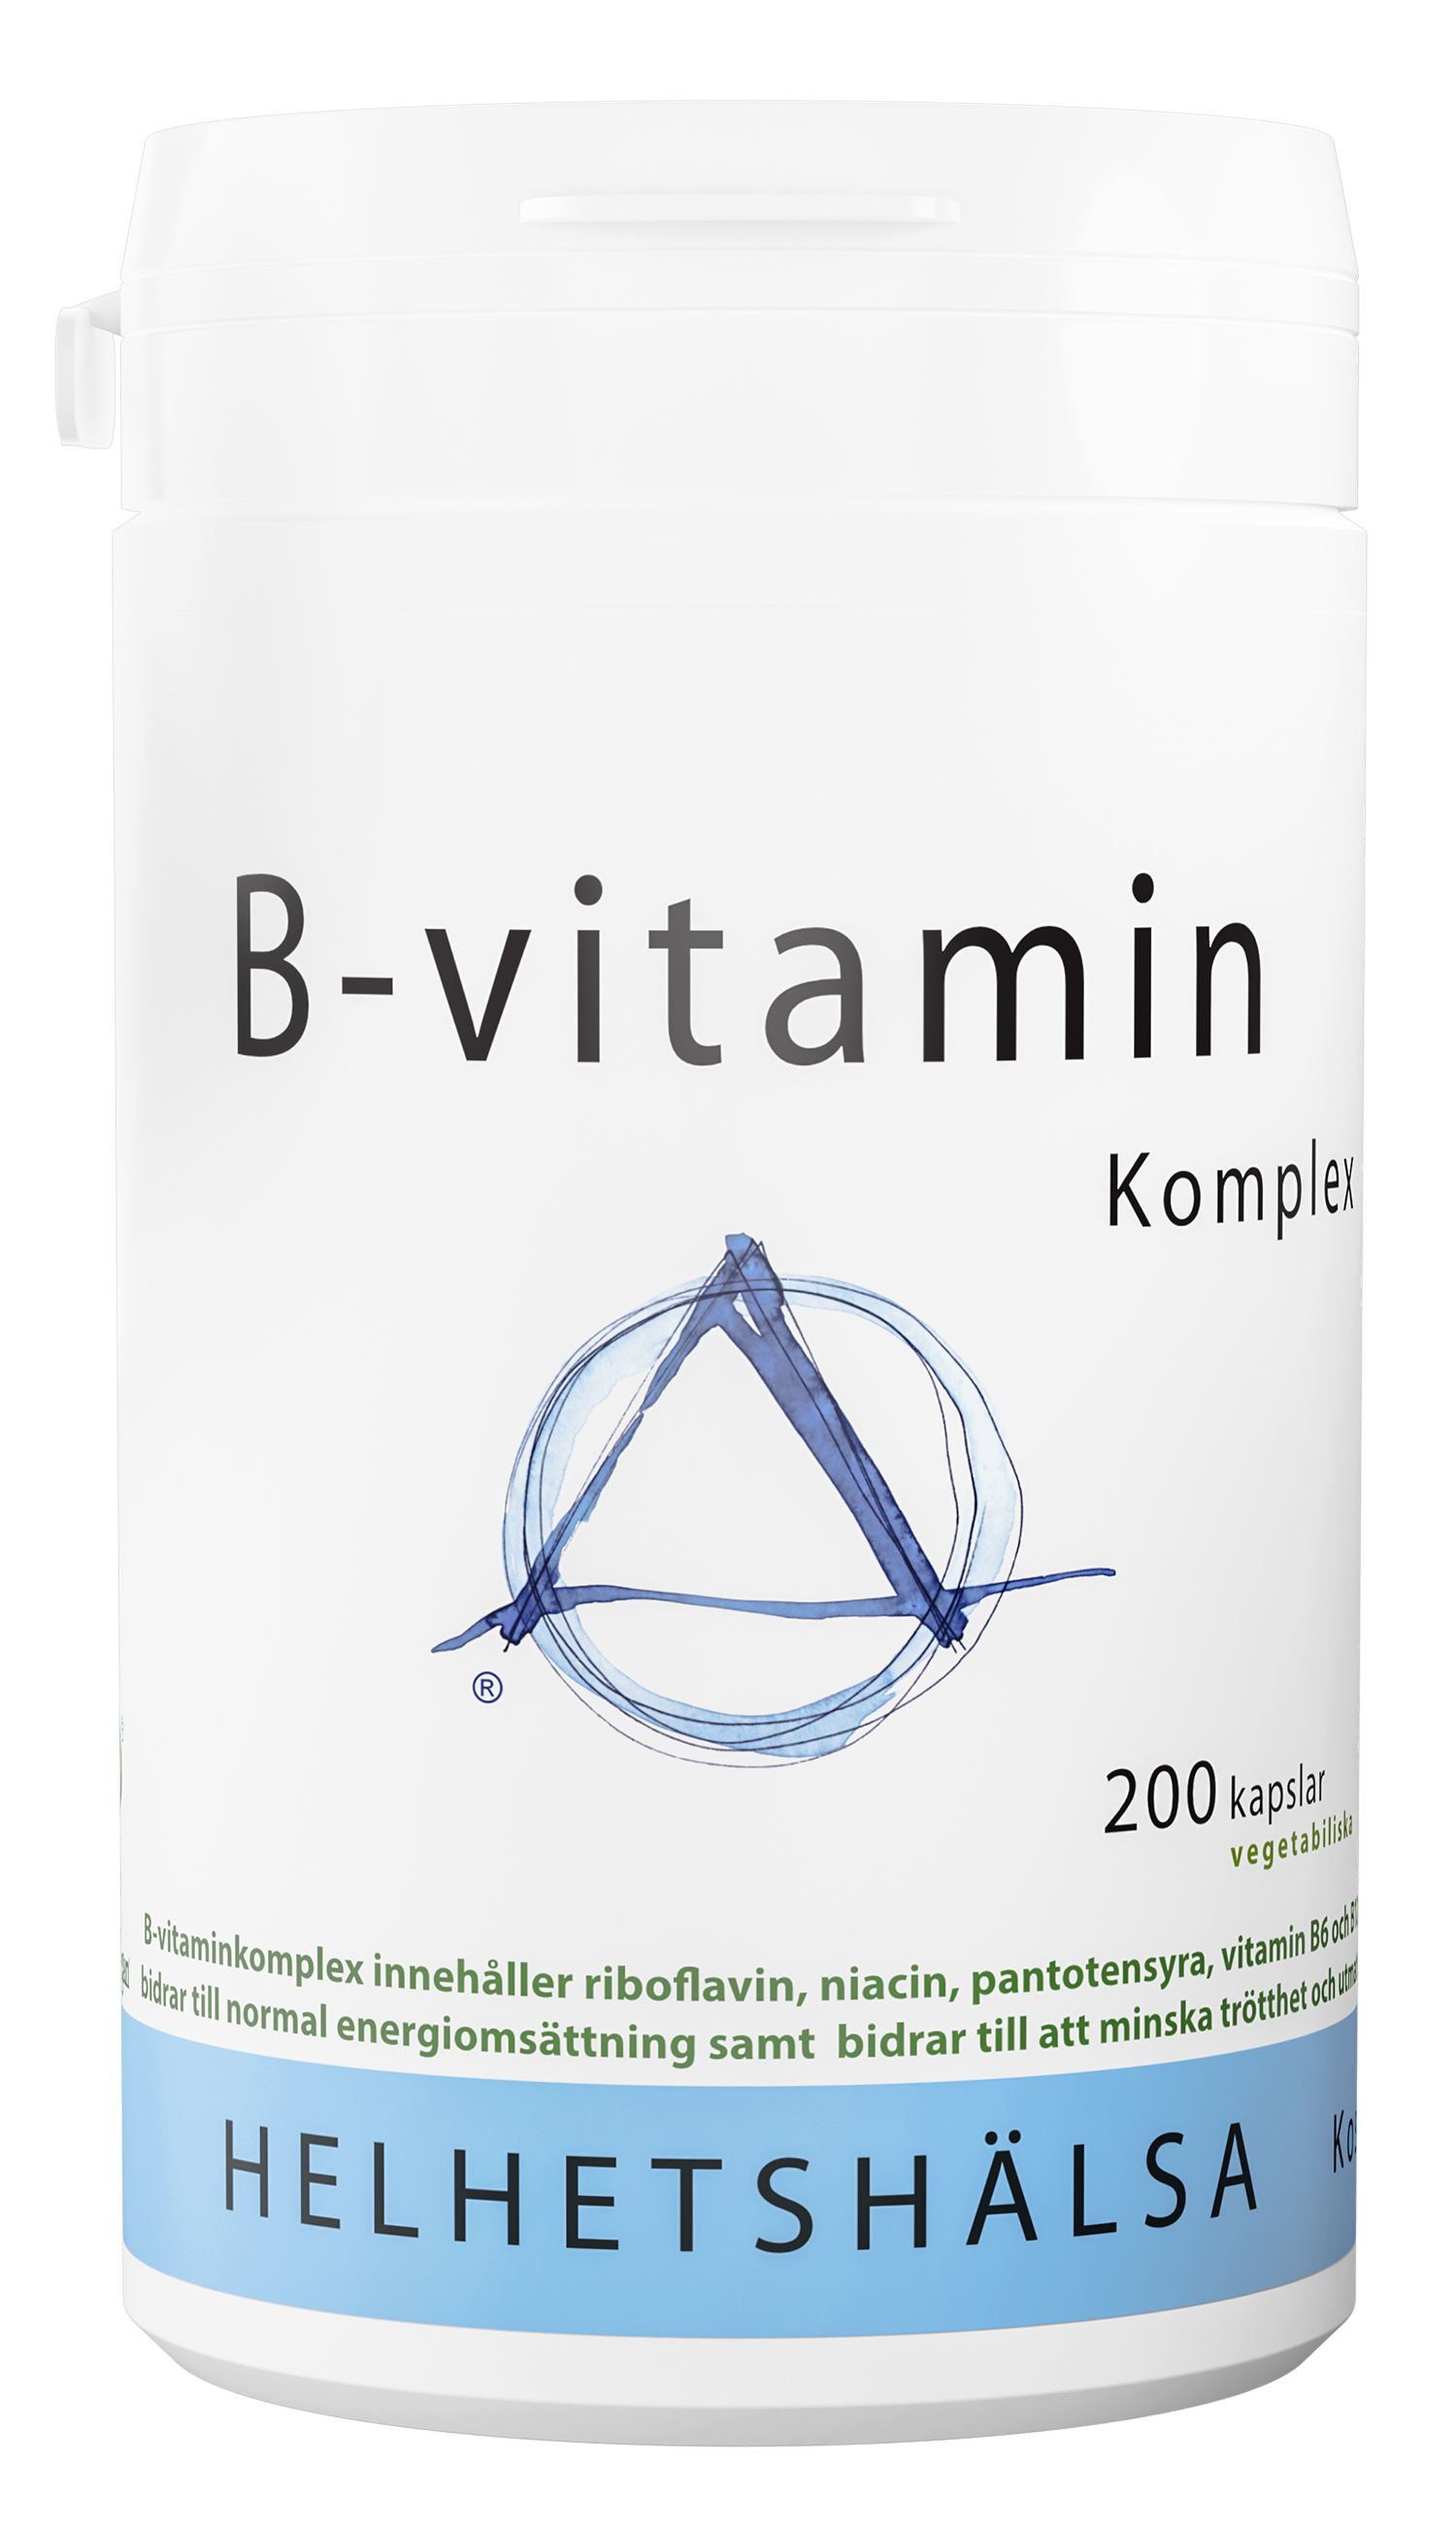 B-vitamin Komplex från Helhetshälsa med 200 kapslar